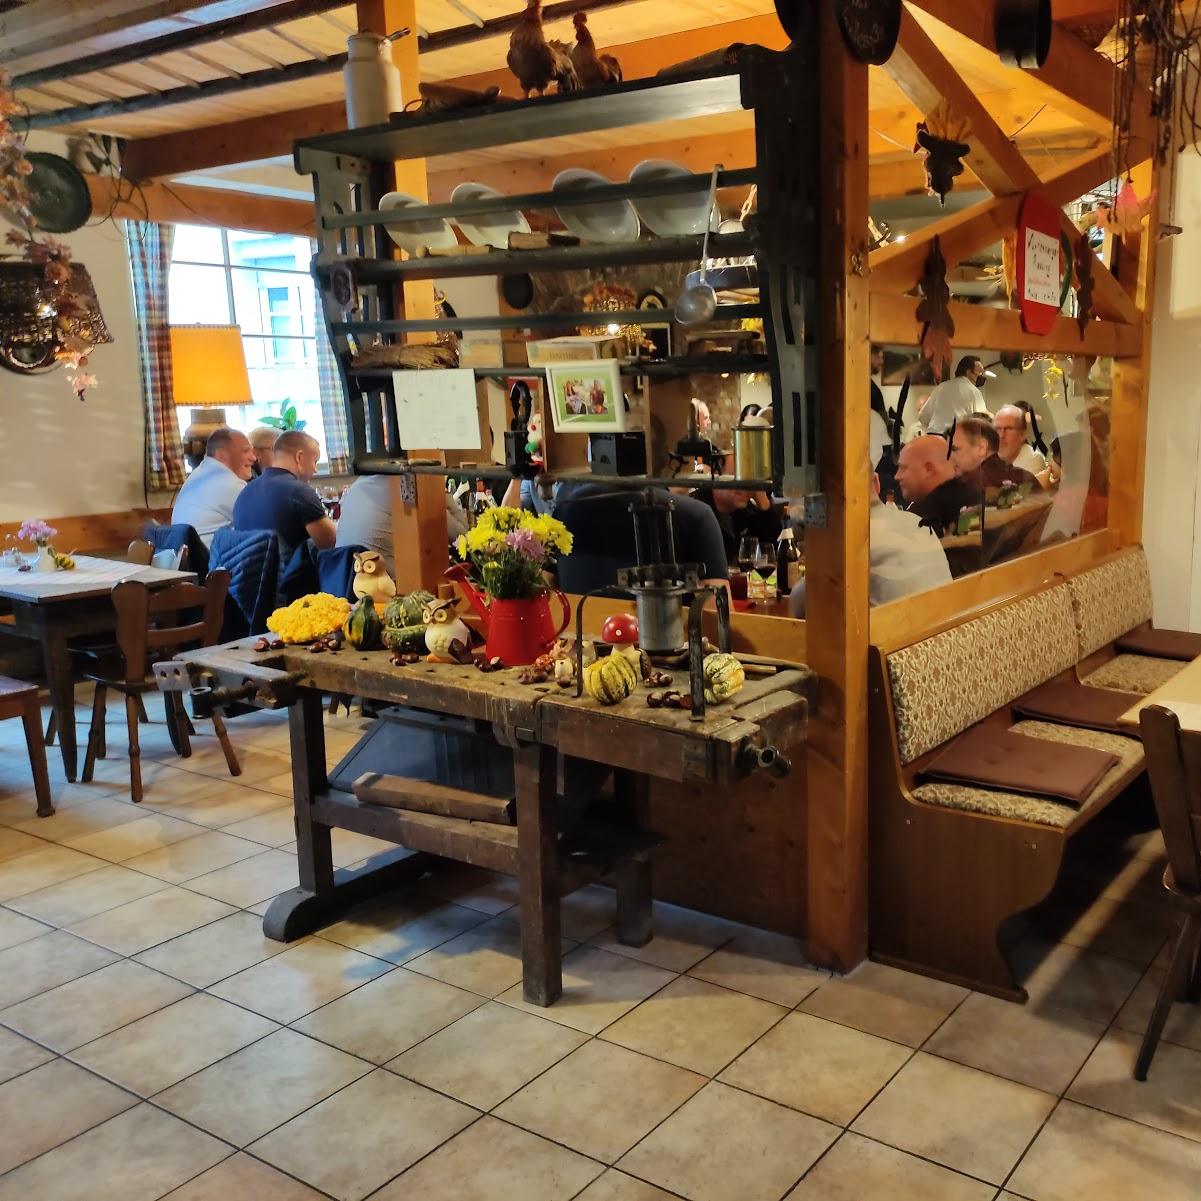 Restaurant "Zum Besenwirt" in Sindelfingen